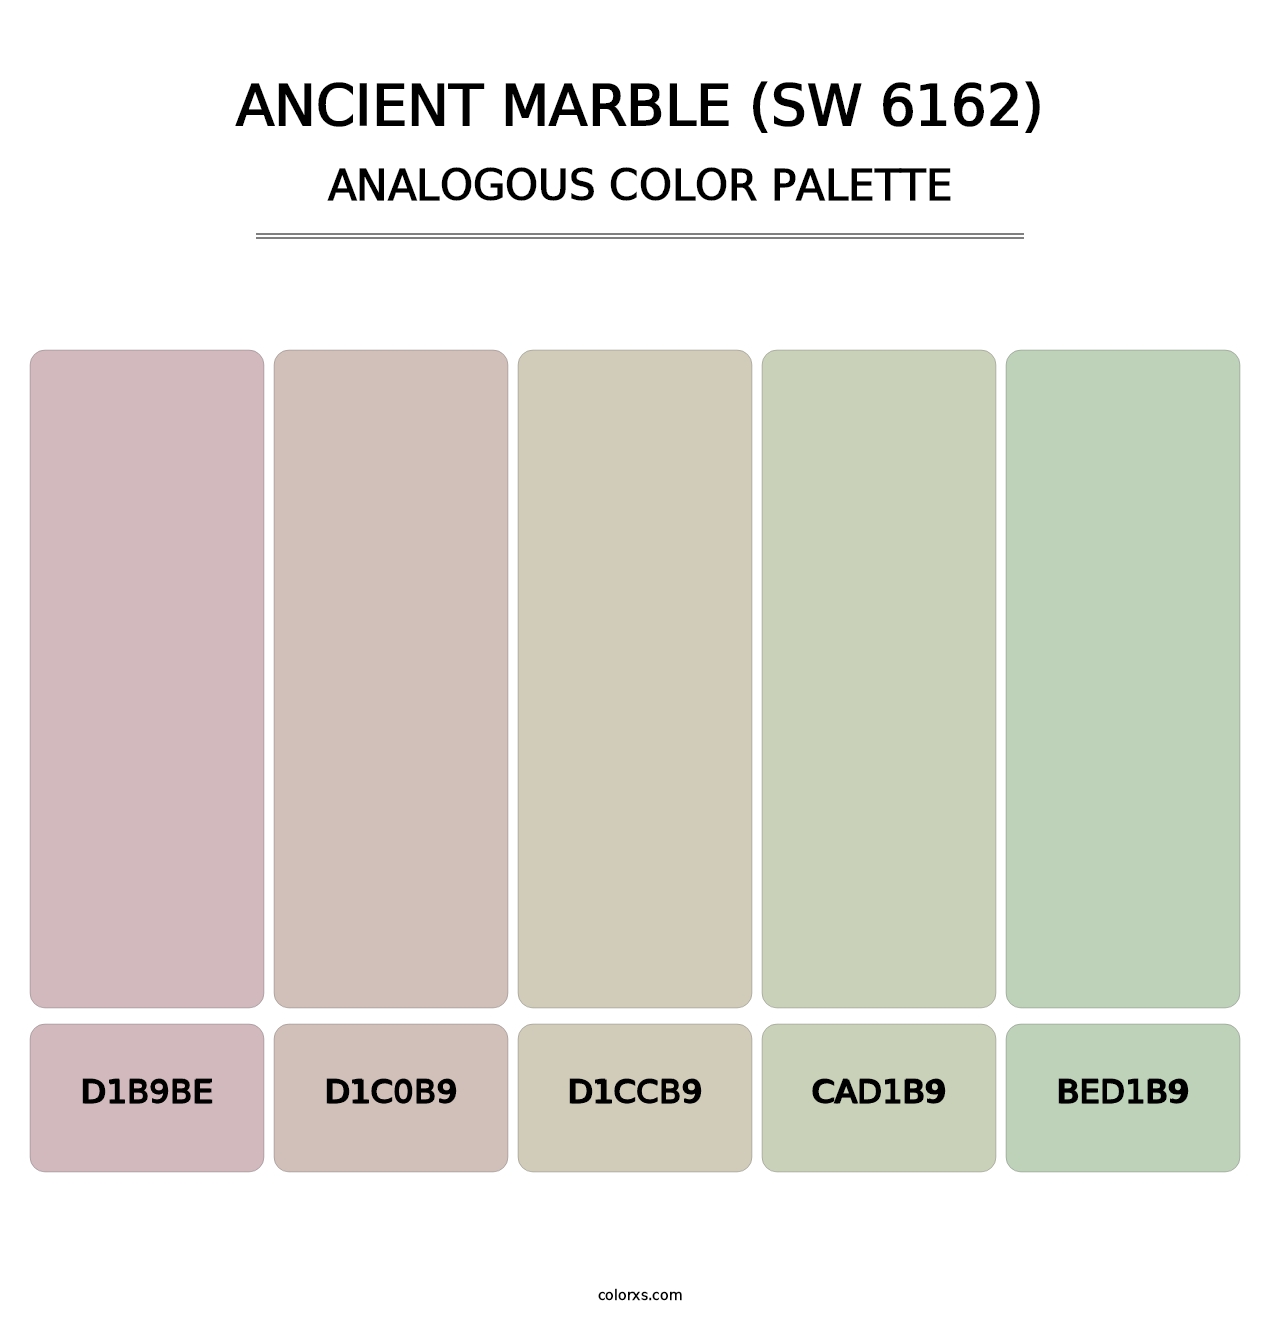 Ancient Marble (SW 6162) - Analogous Color Palette